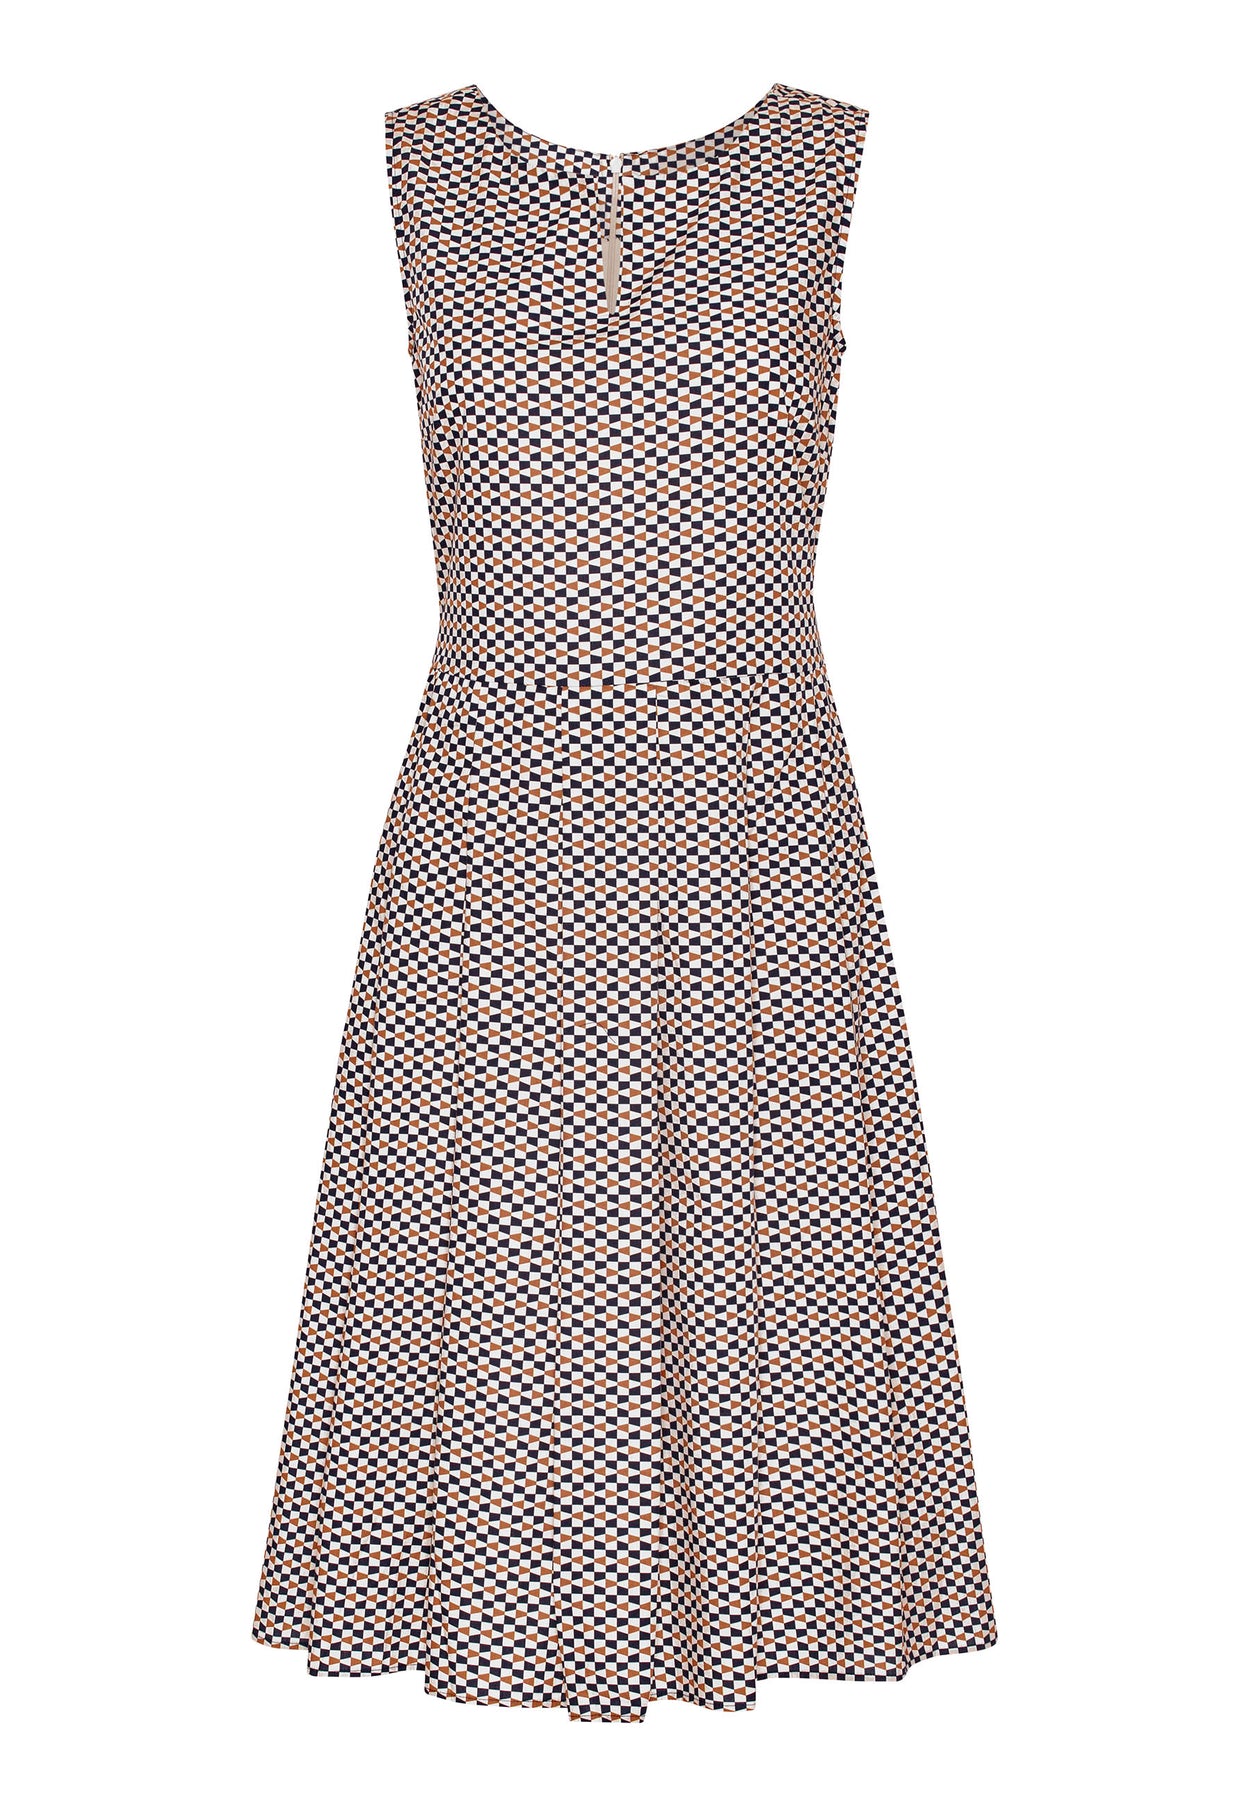 GROBUND Christiane kjolen - den i grafisk mønster